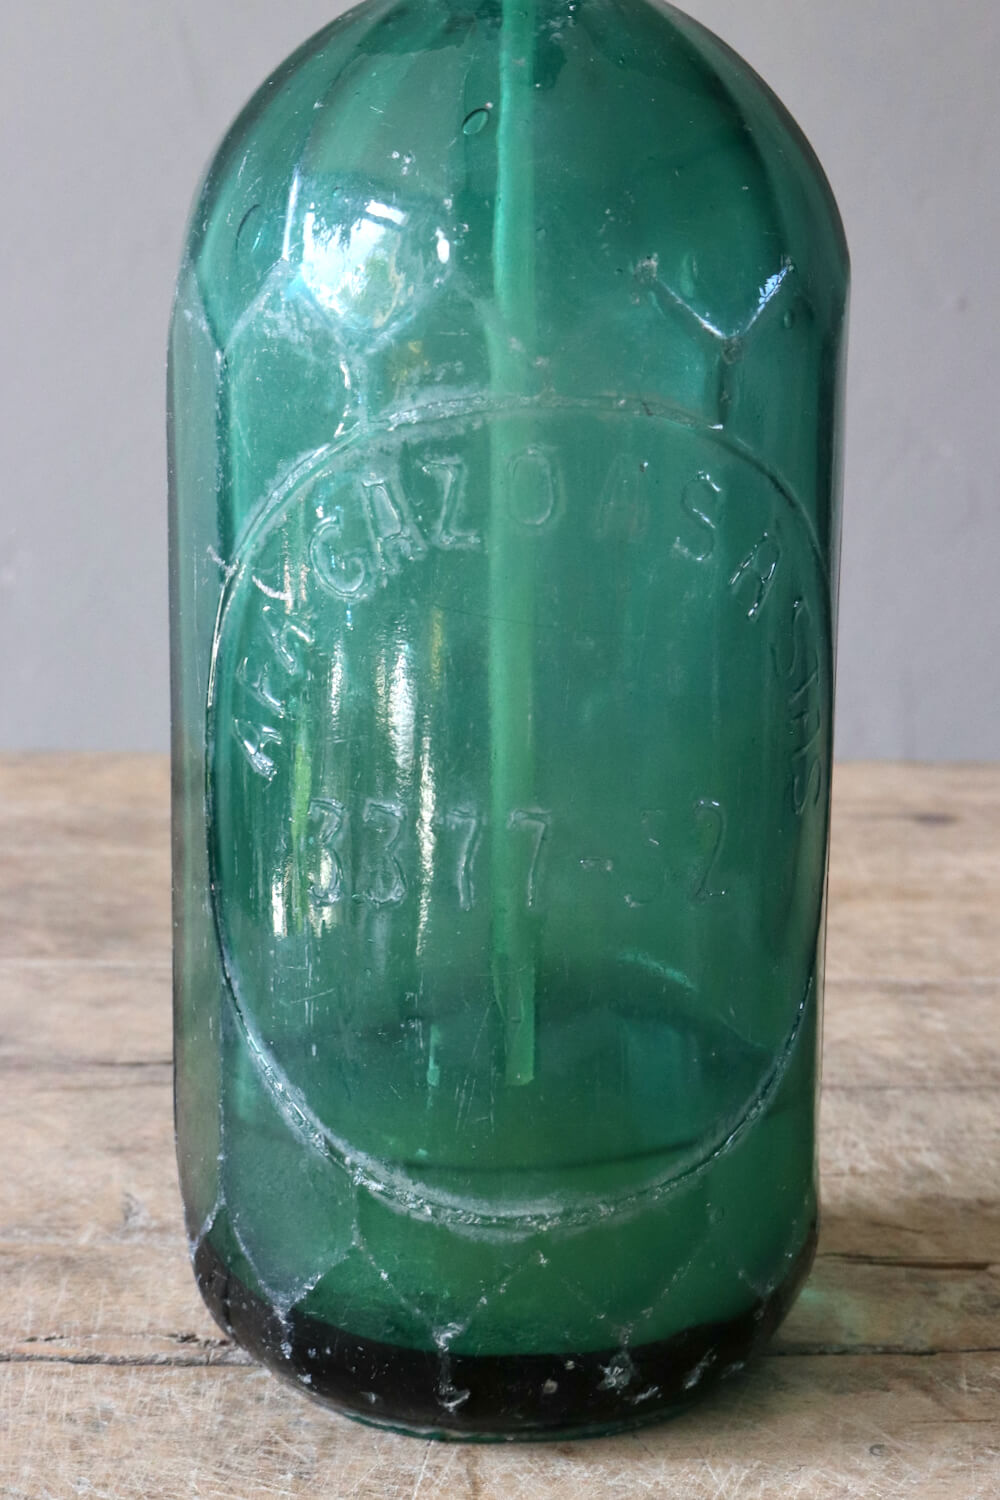 siphon flasche grün